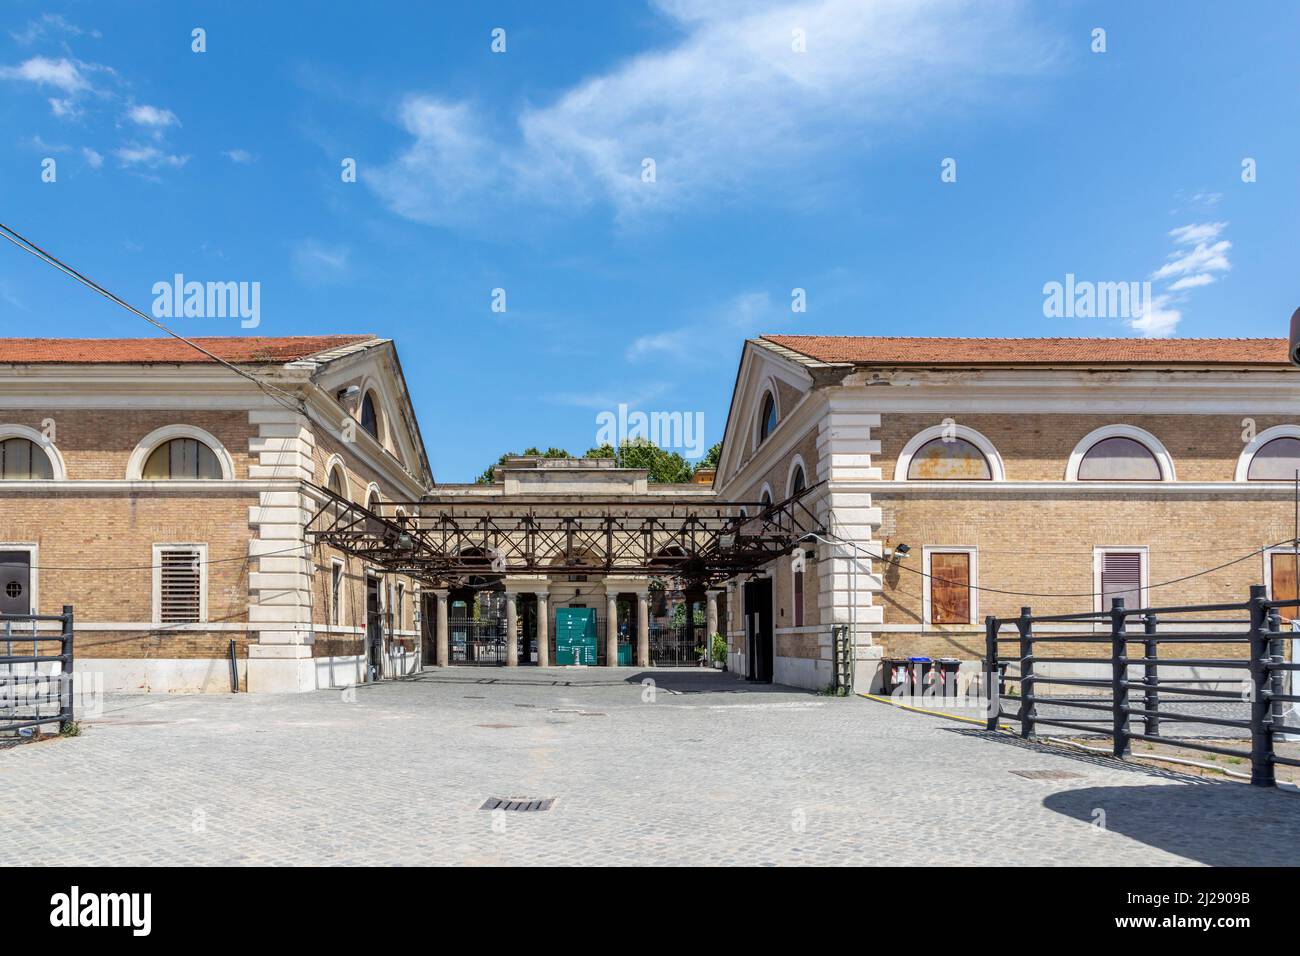 Roma, Italia - 3 agosto 2021: Mostra d'arte contemporanea presso il Macro Contemporary Art Center di Testaccio, Roma, Italia in una vecchia costruzione industriale Foto Stock